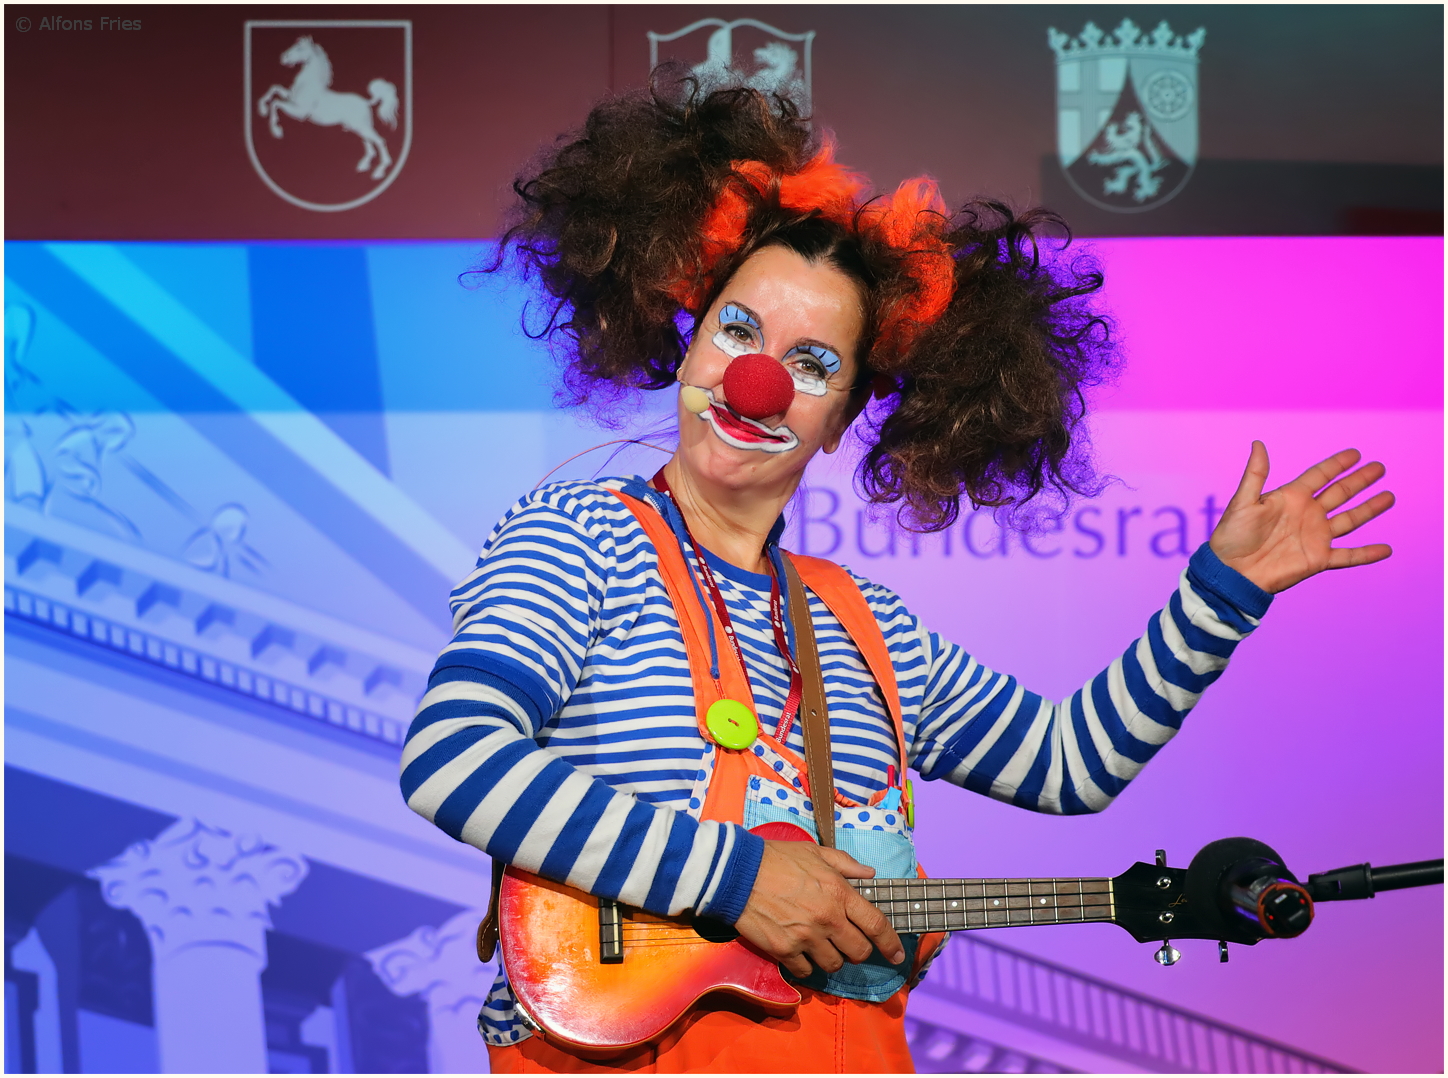 Eine nette Clownerie im "Bundesrat", ...